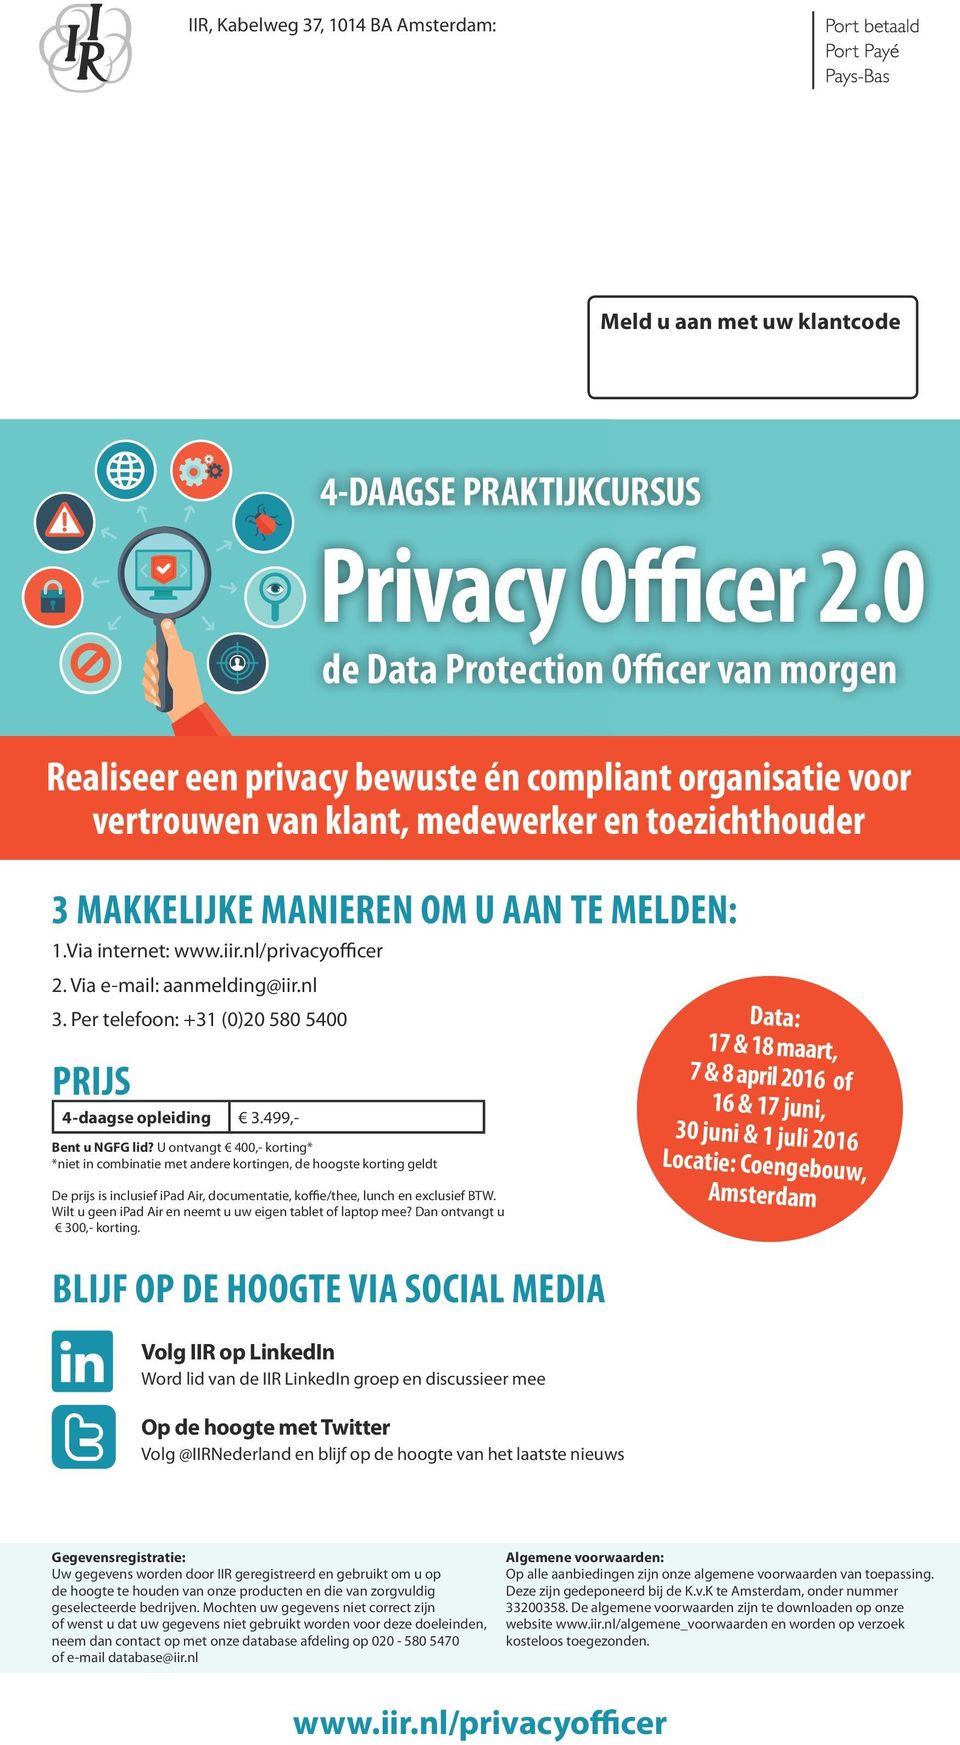 Via internet: www.iir.nl/privacyofficer 2. Via e-mail: aanmelding@iir.nl 3. Per telefoon: +31 (0)20 580 5400 PRIJS 4-daagse opleiding 3.499,- Bent u NGFG lid?